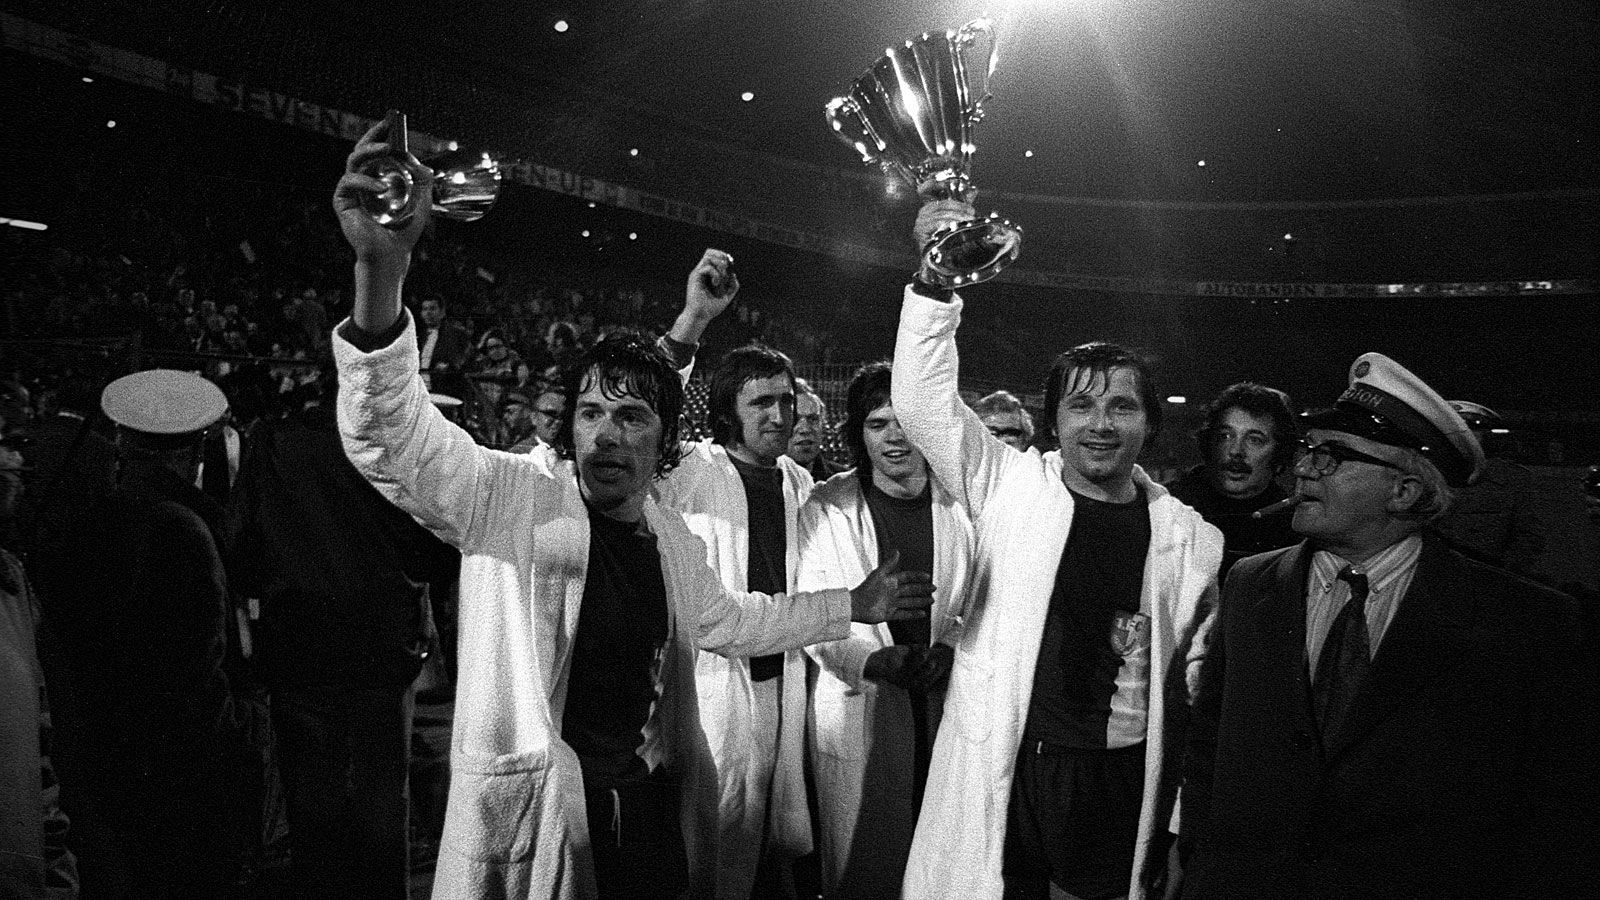 
                <strong>Magdeburg war Europapokalsieger der Pokalsieger</strong><br>
                Auch ein internationaler Titel steht im Portfolio der 3. Liga. Der 1. FC Magdeburg gewann 1973/1974 den Europapokal der Pokalsieger - nach einem 2:0 im Finale über den AC Mailand. Gefeiert wurde anschließend standesgemäß in Bademänteln.
              